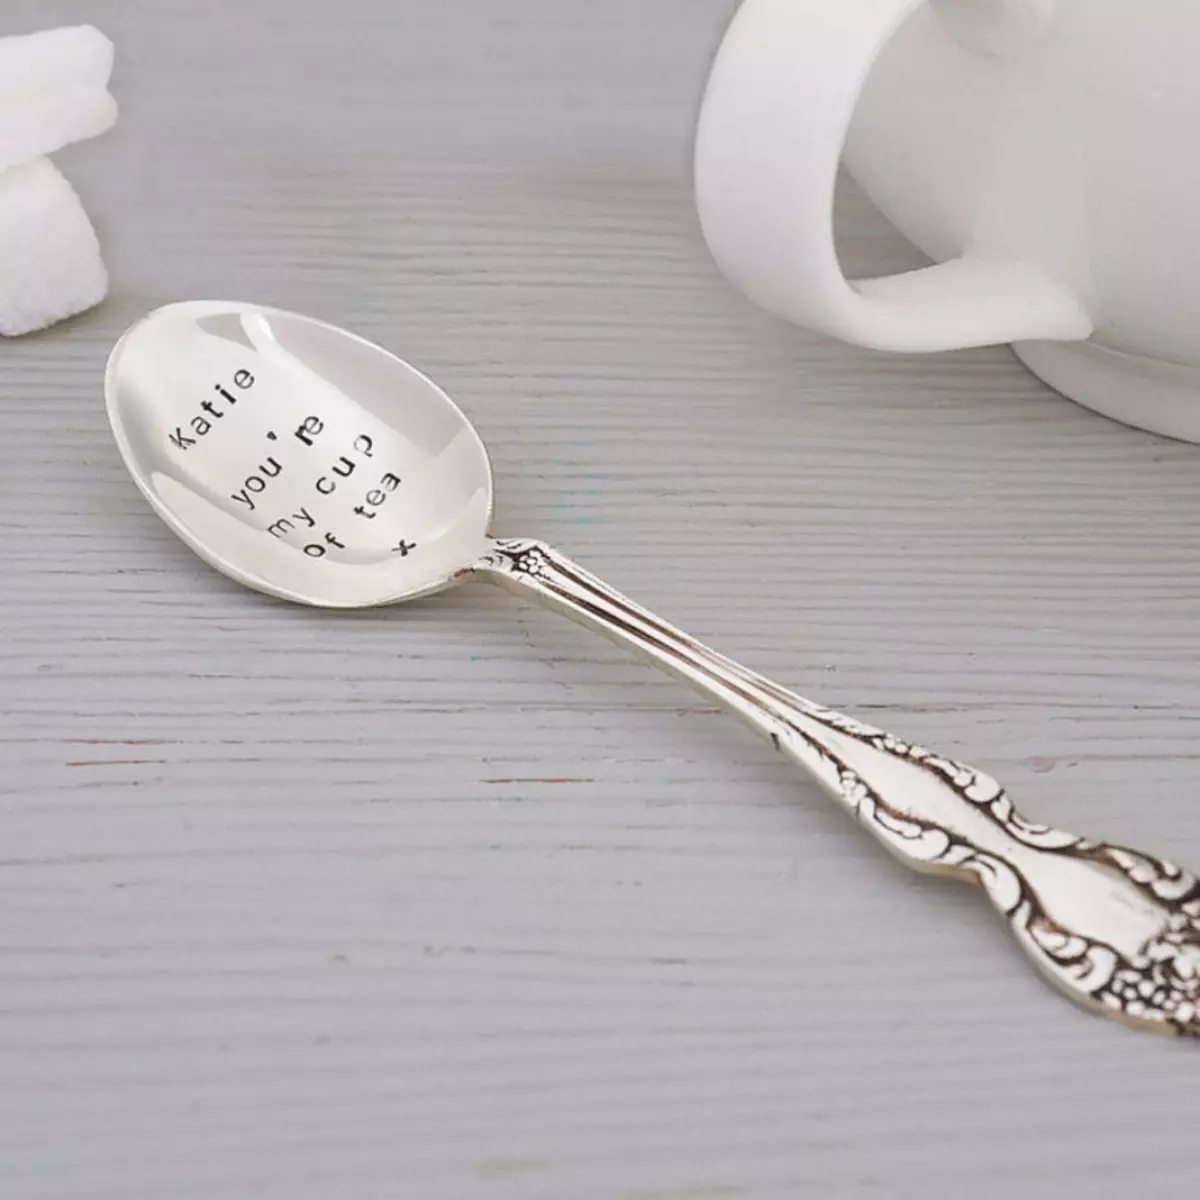 Sudut spoo pikeun barudak: hiji sendok pikeun bayi pikeun Christed. Naha masihan alat pikeun Baptisan? Spoons pribadi 